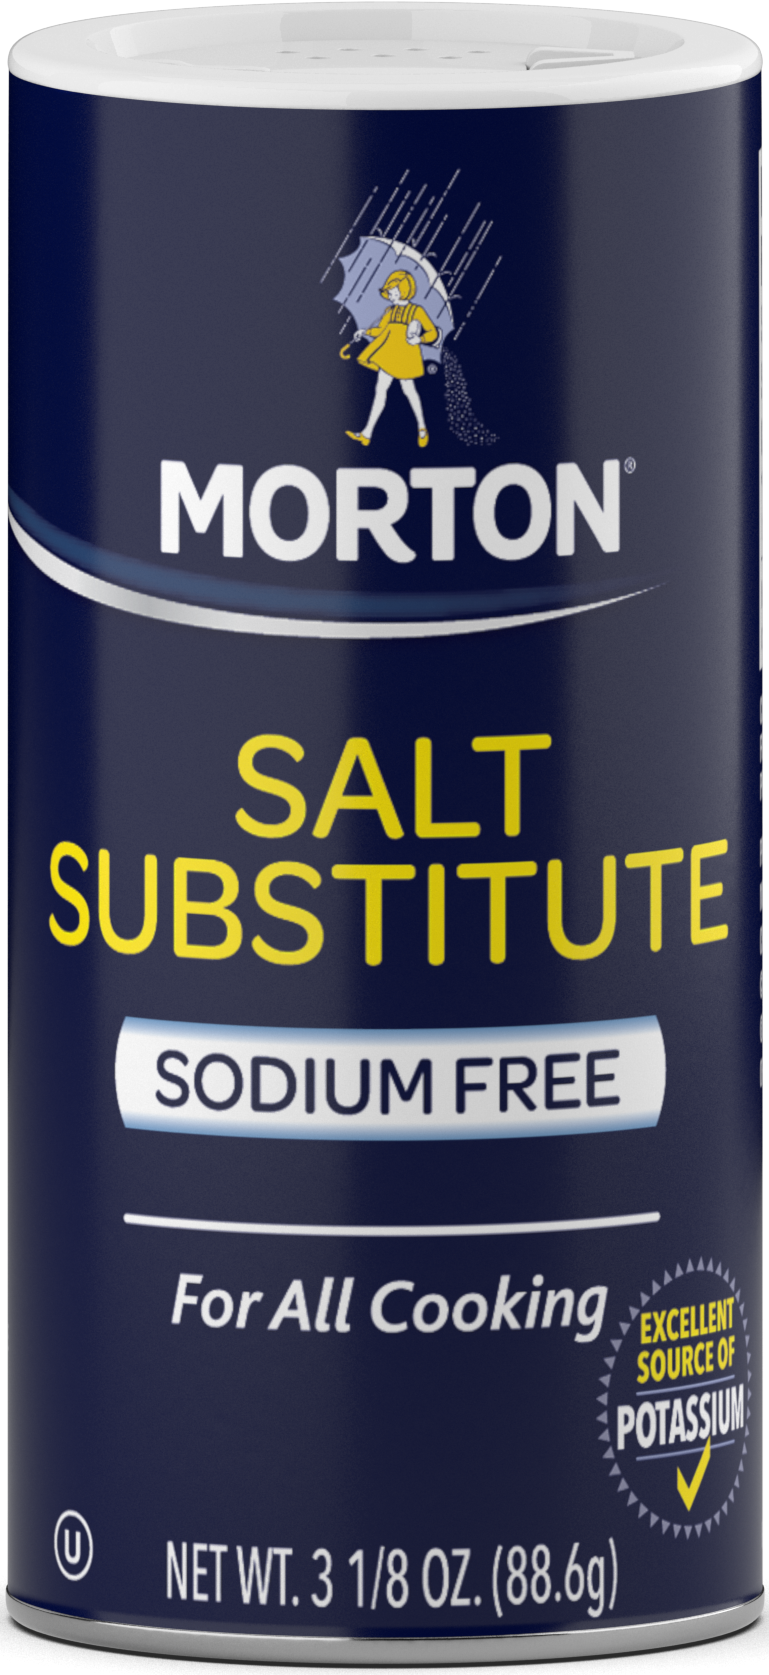 Morton Salt Substitute, Sodium Free